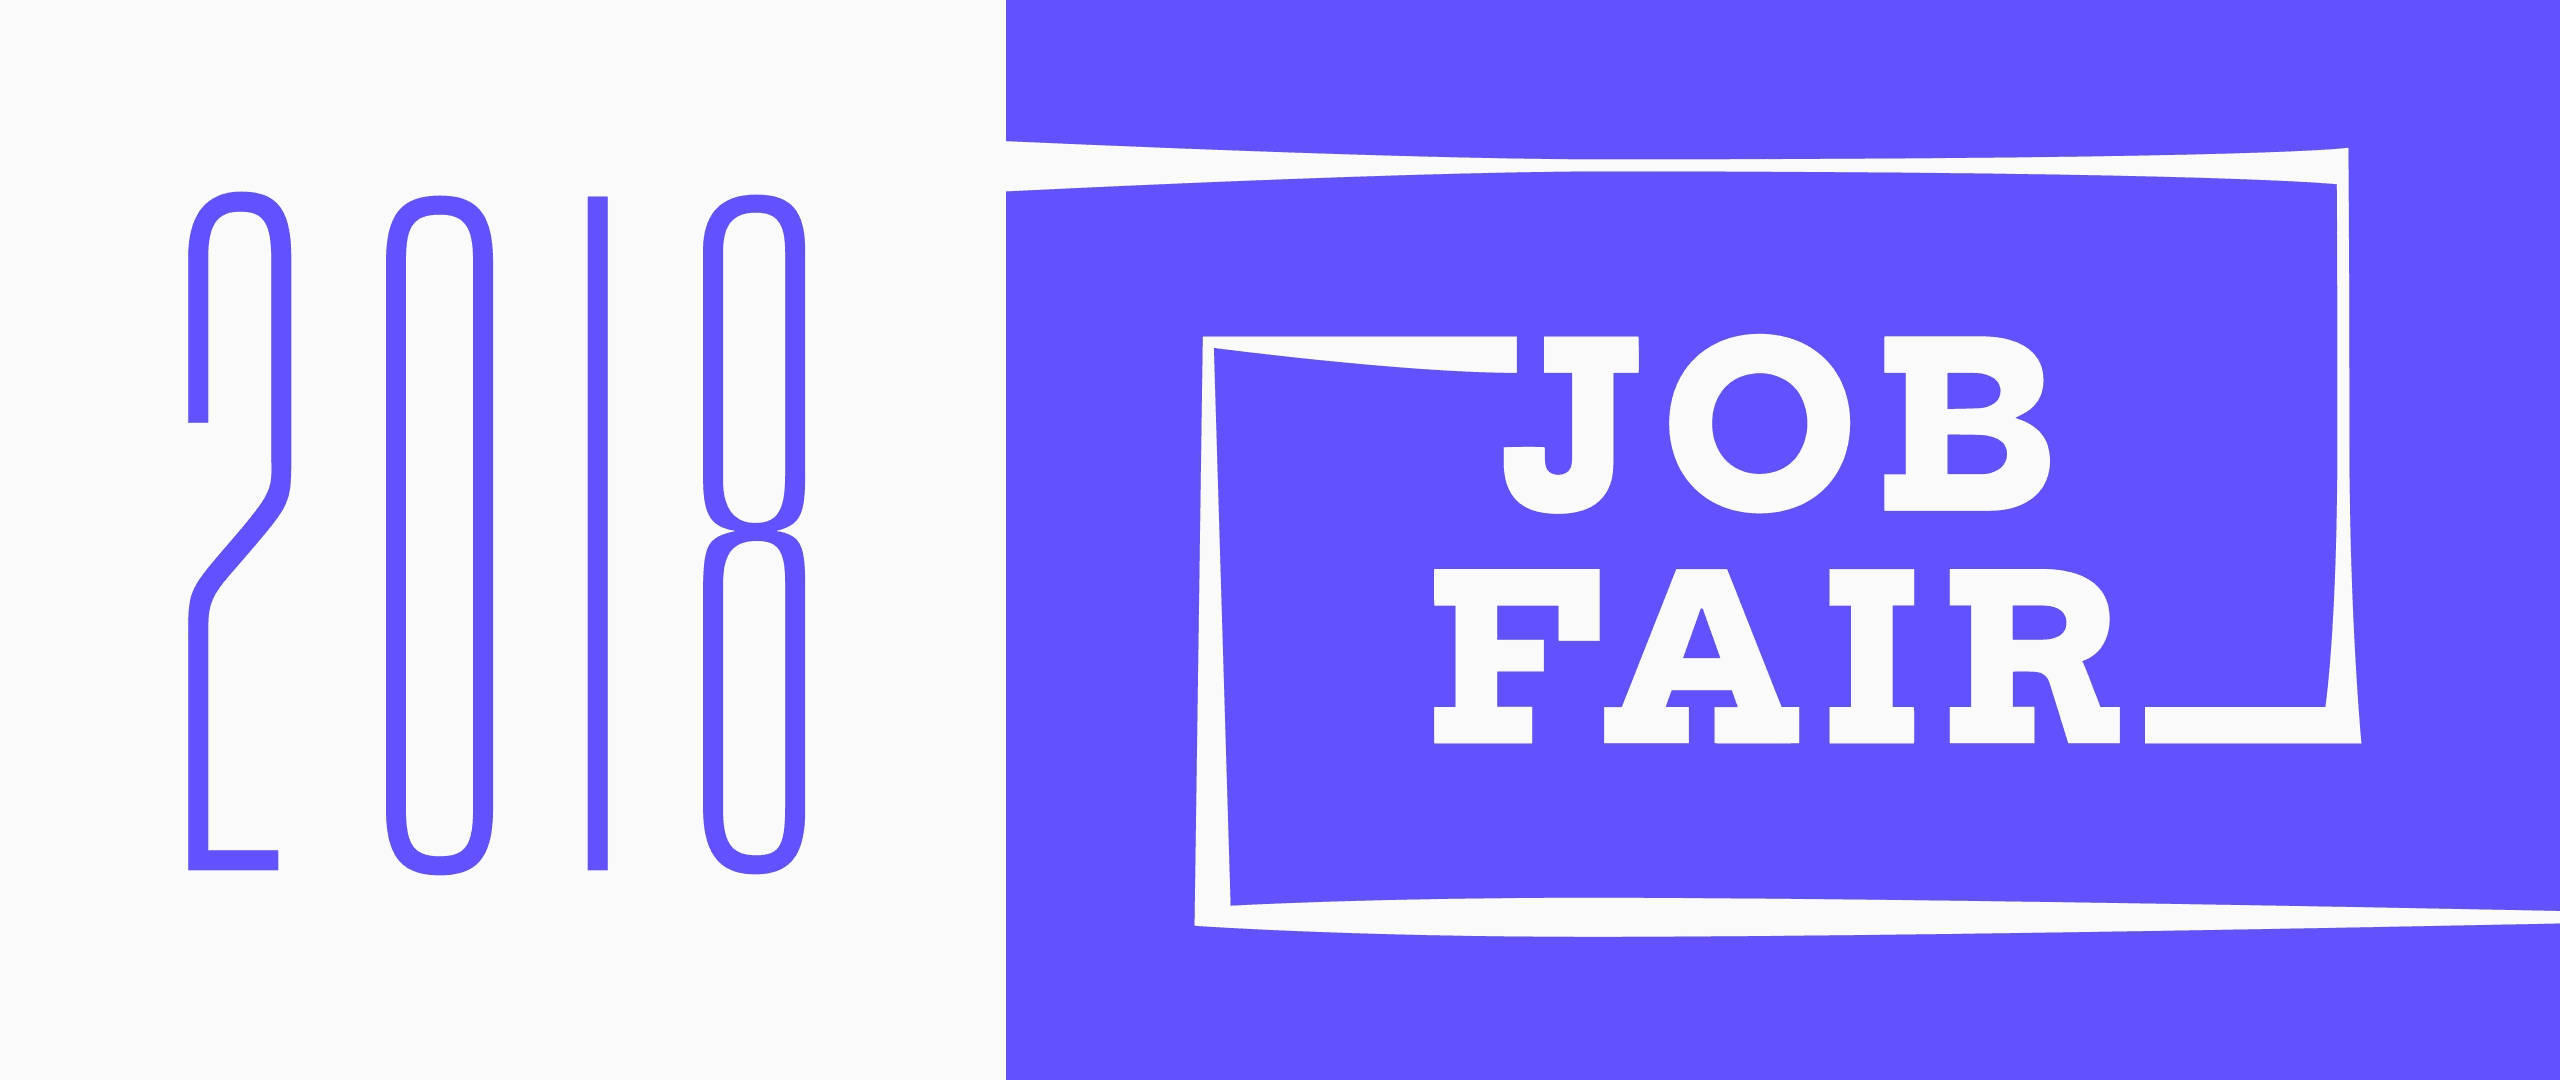 Feb 8: 2018 Job Fair